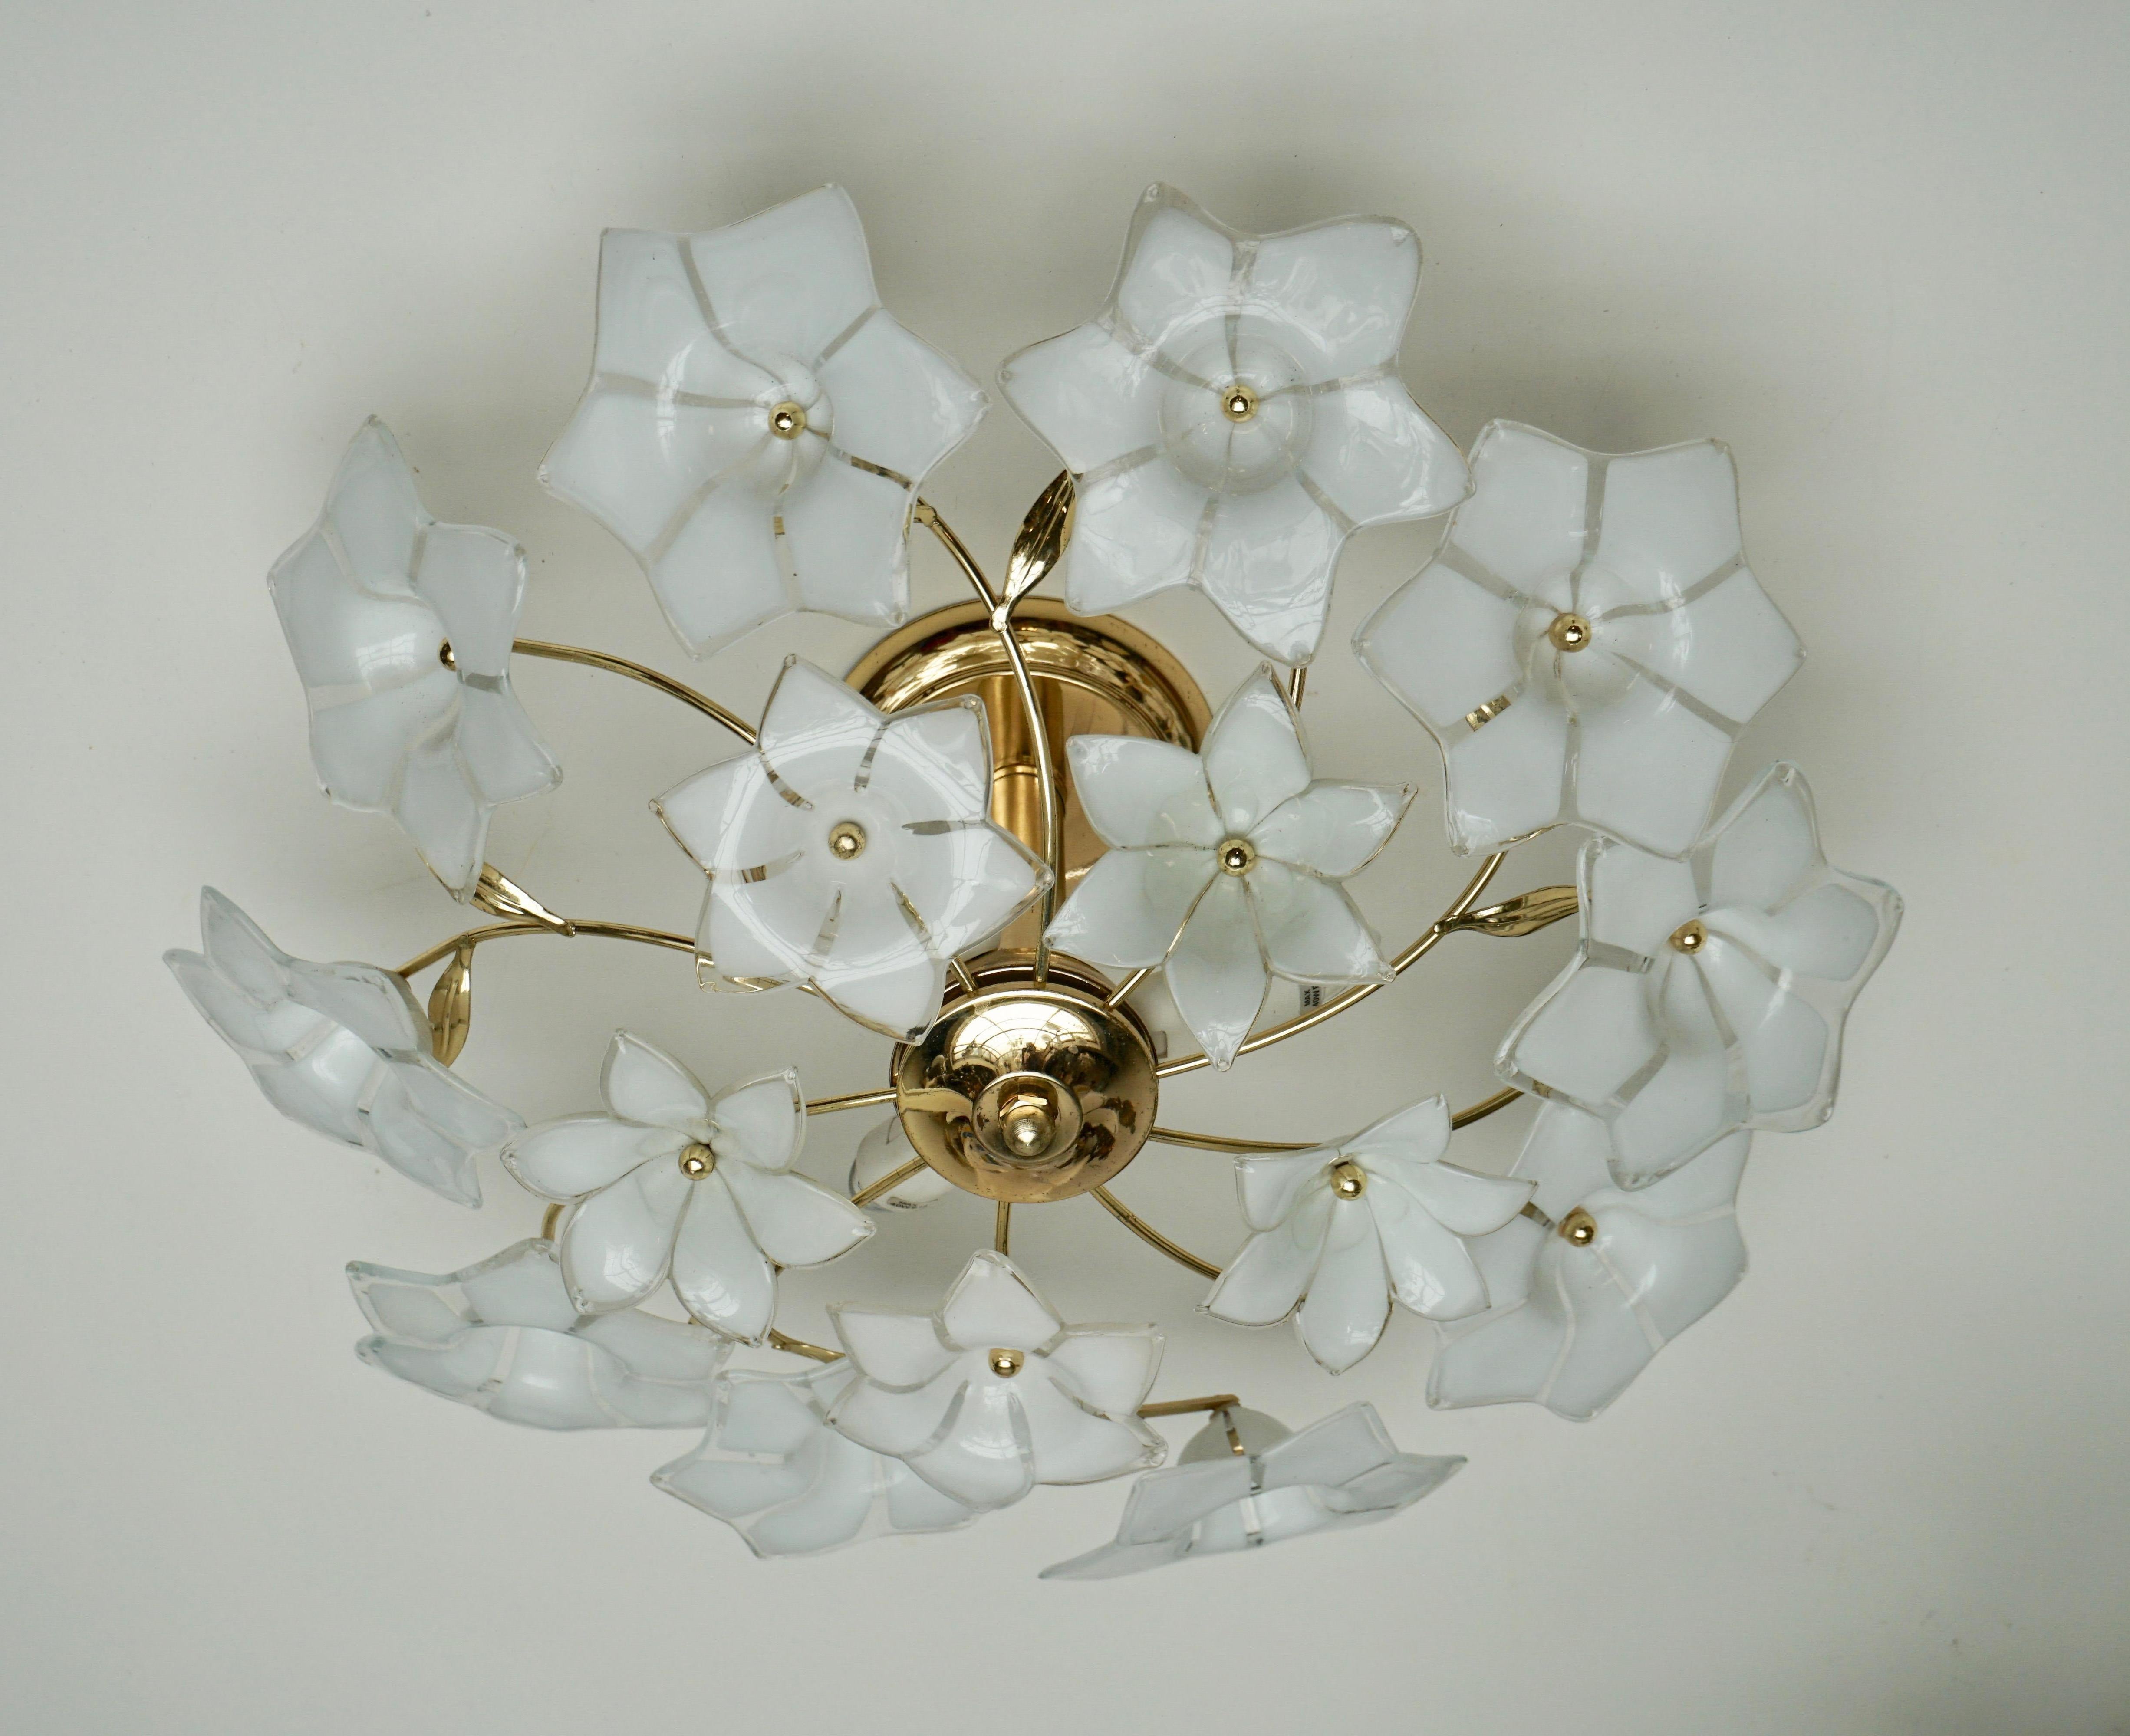 Italienische Murano-Glas und Messing Blume flush mount oder Wandleuchte.
Maße: Durchmesser 48 cm.
Höhe 20 cm.
Drei E14-Glühbirnen.